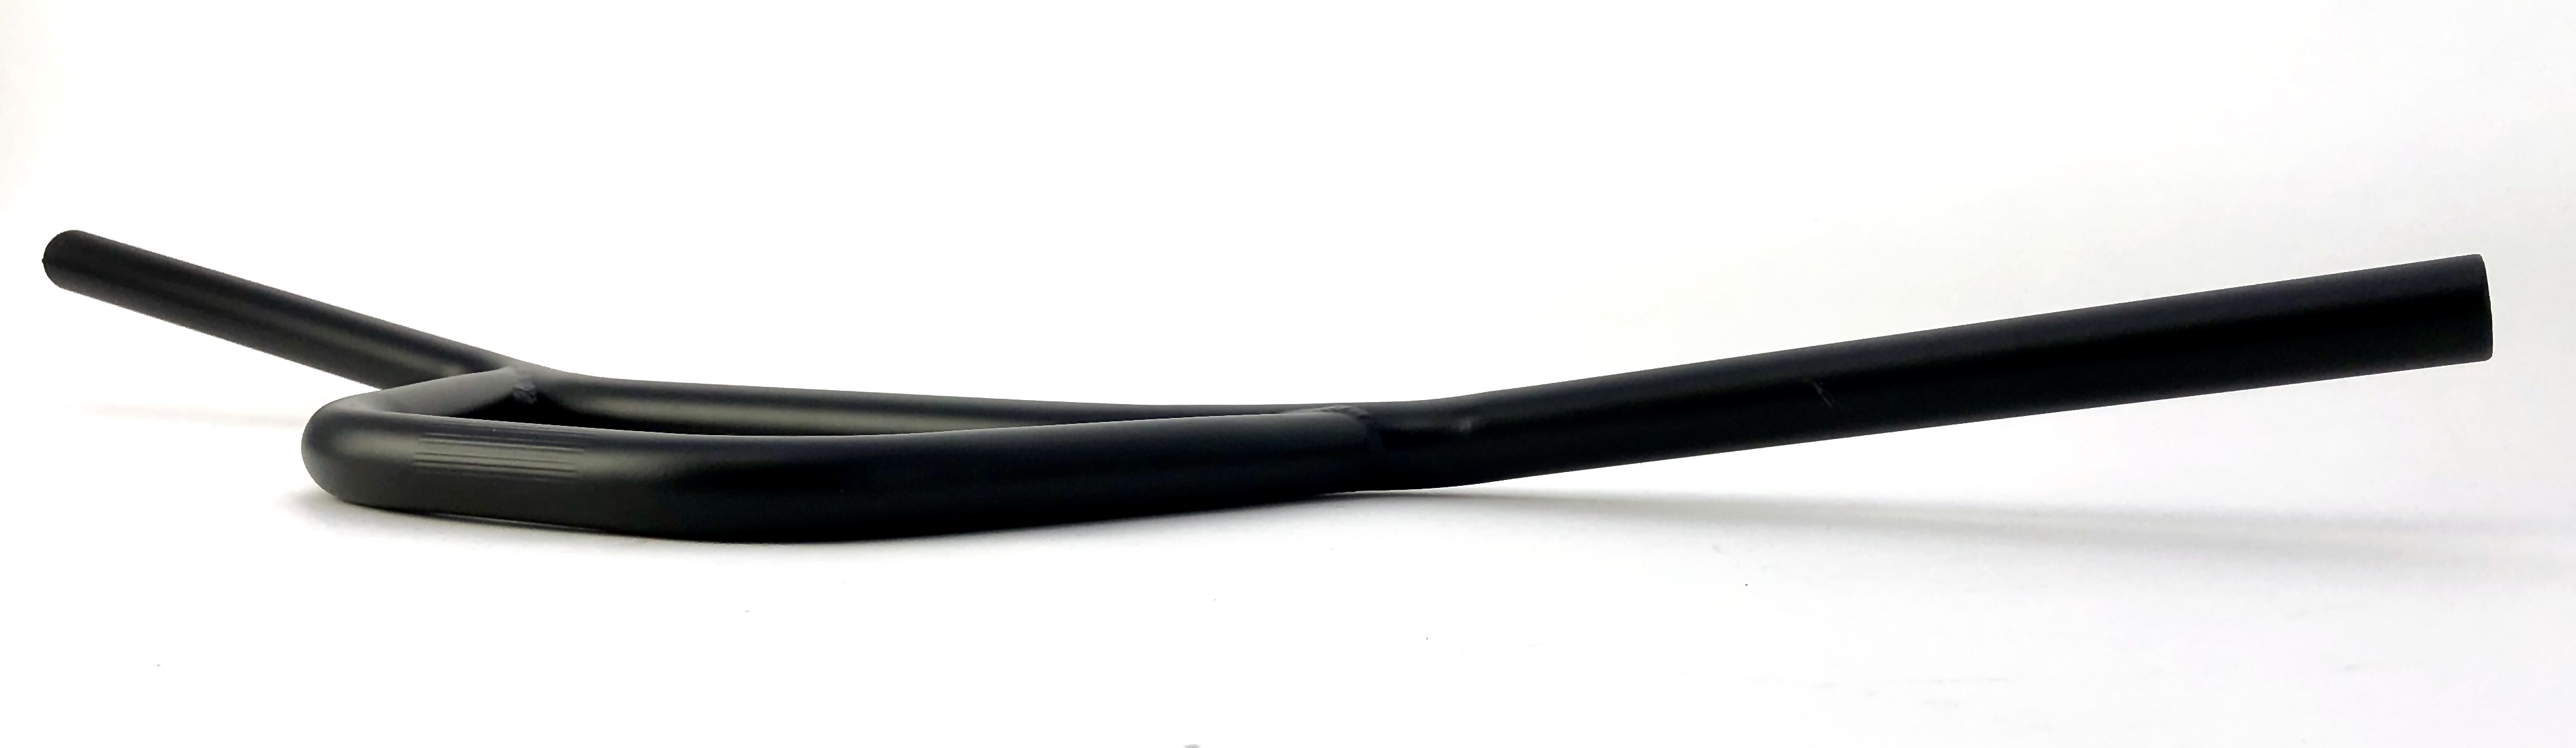 Flat Cross - manubrio largo e piatto in nero opaco forma BMX